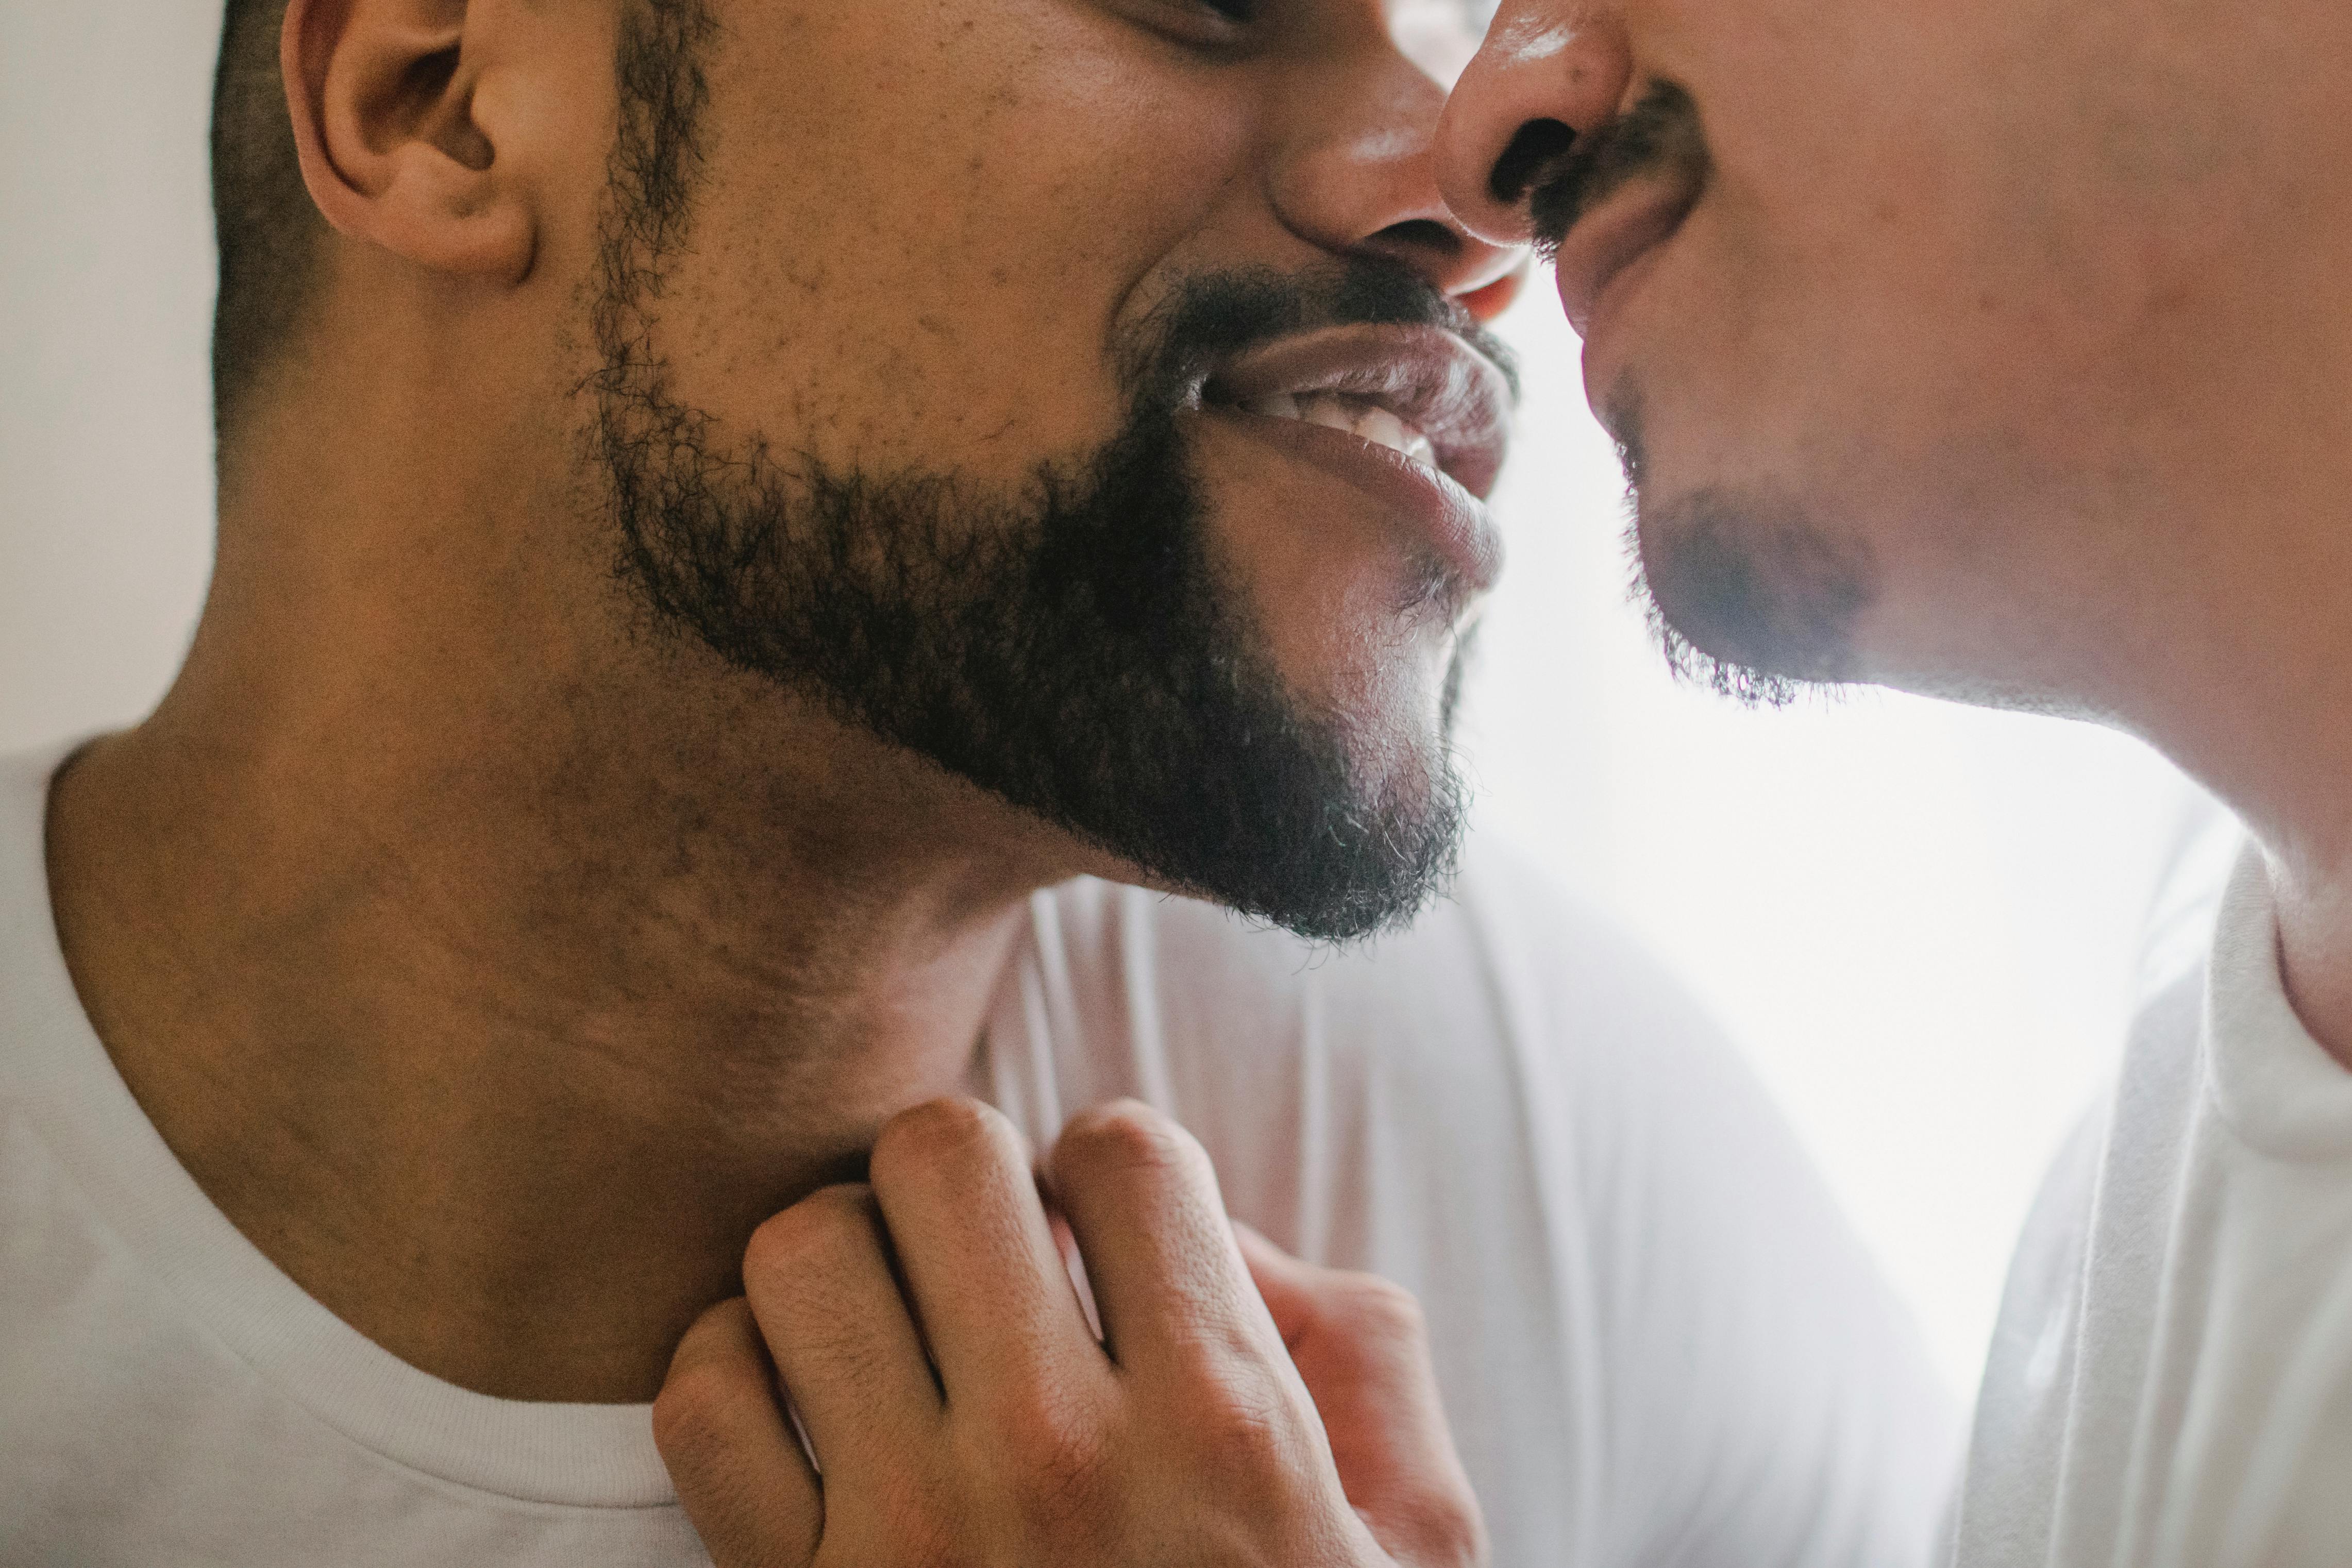 Deux hommes photographiés alors qu'ils s'apprêtent à s'embrasser | Source : Pexels